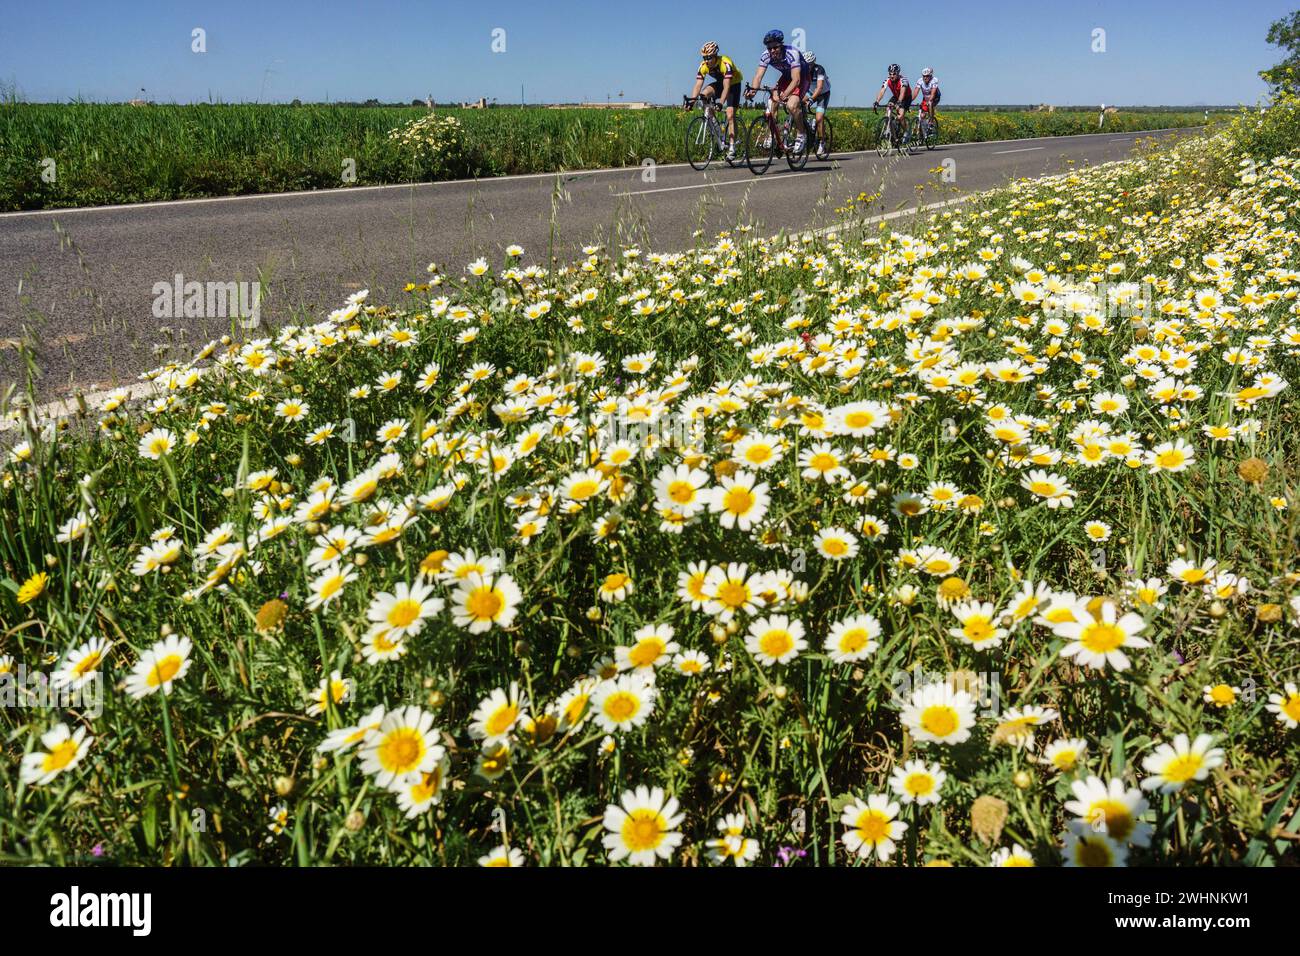 Ciclistas en la carretera de Es Trenc Stock Photo